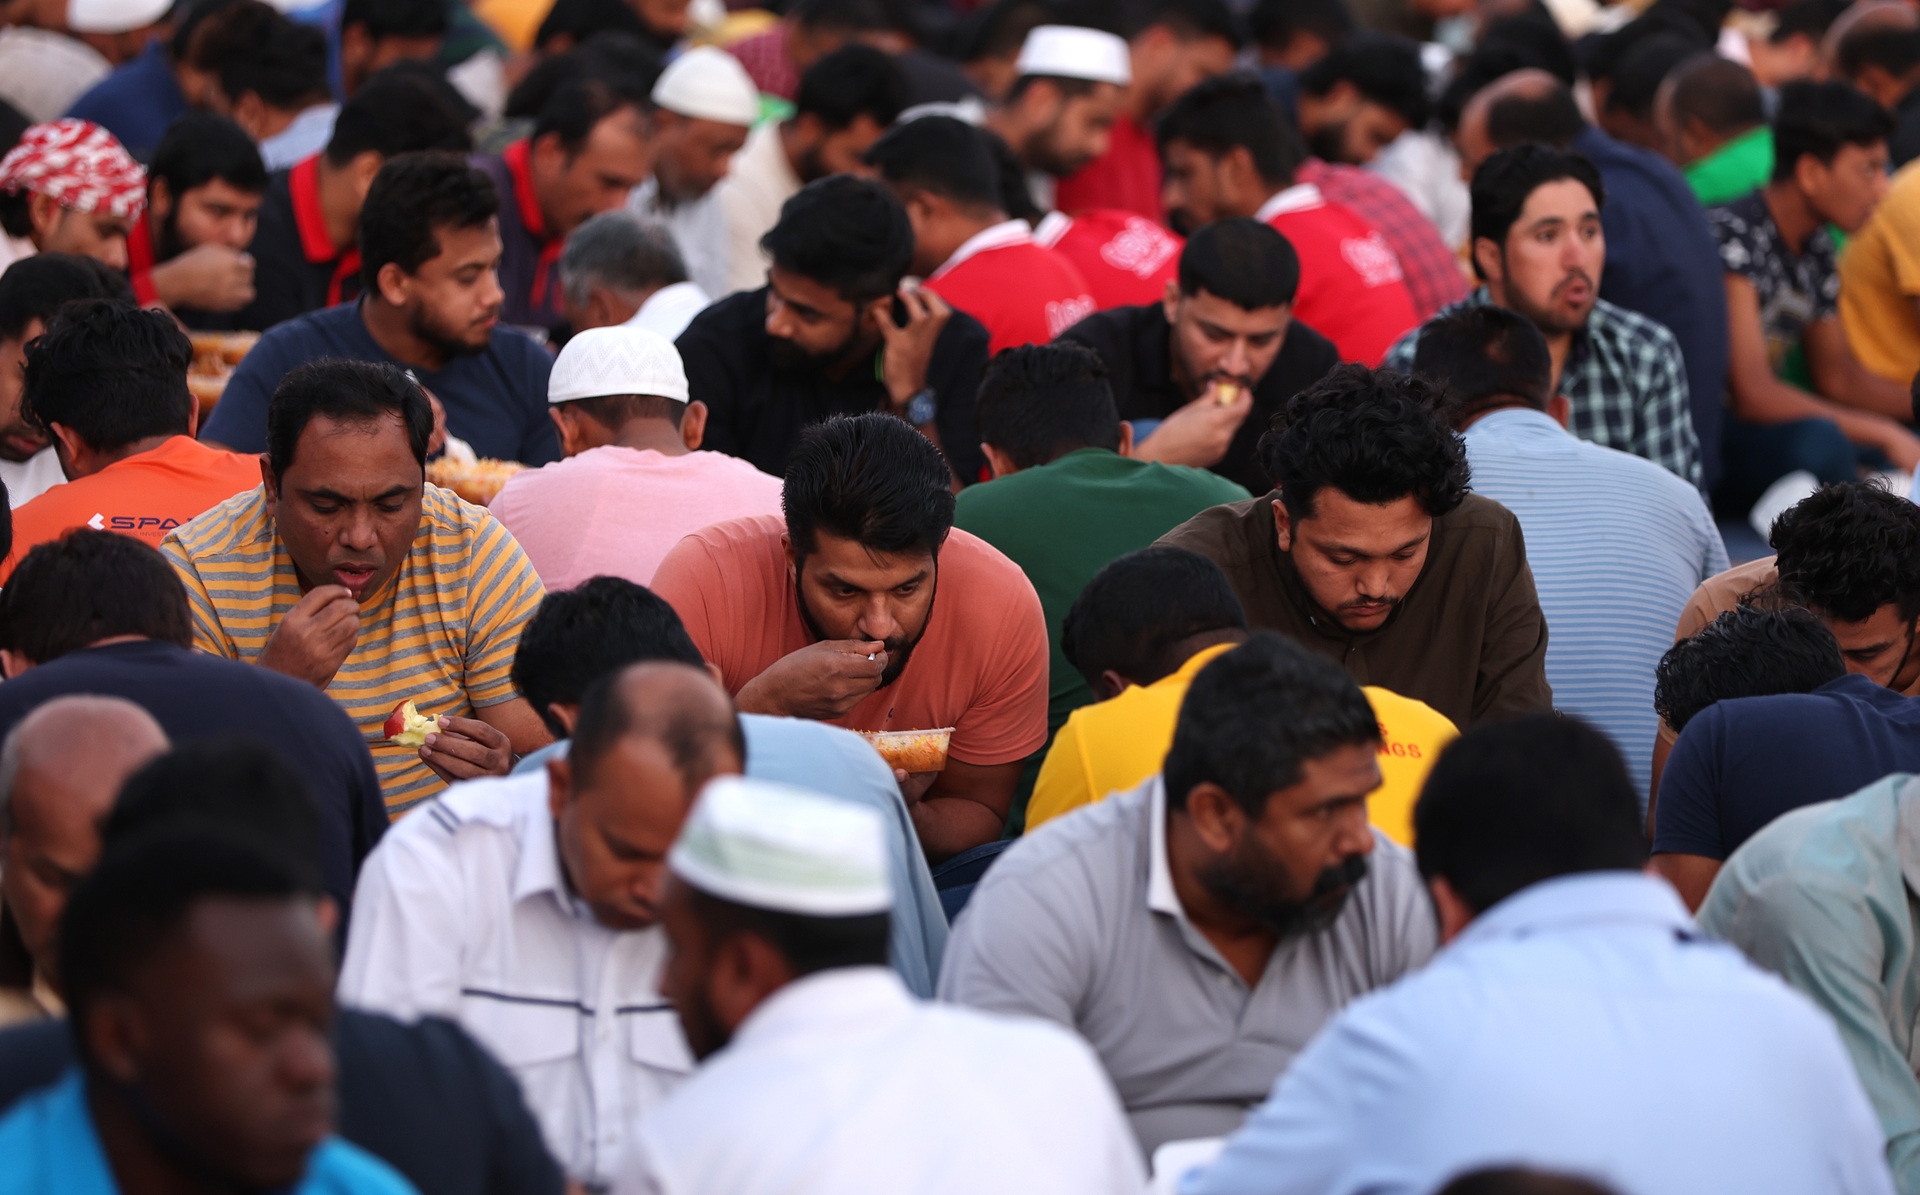 «За глоток воды могли оштрафовать на 200 долларов». Как проходит Рамадан в Дубае и как он сказывается на туристах1